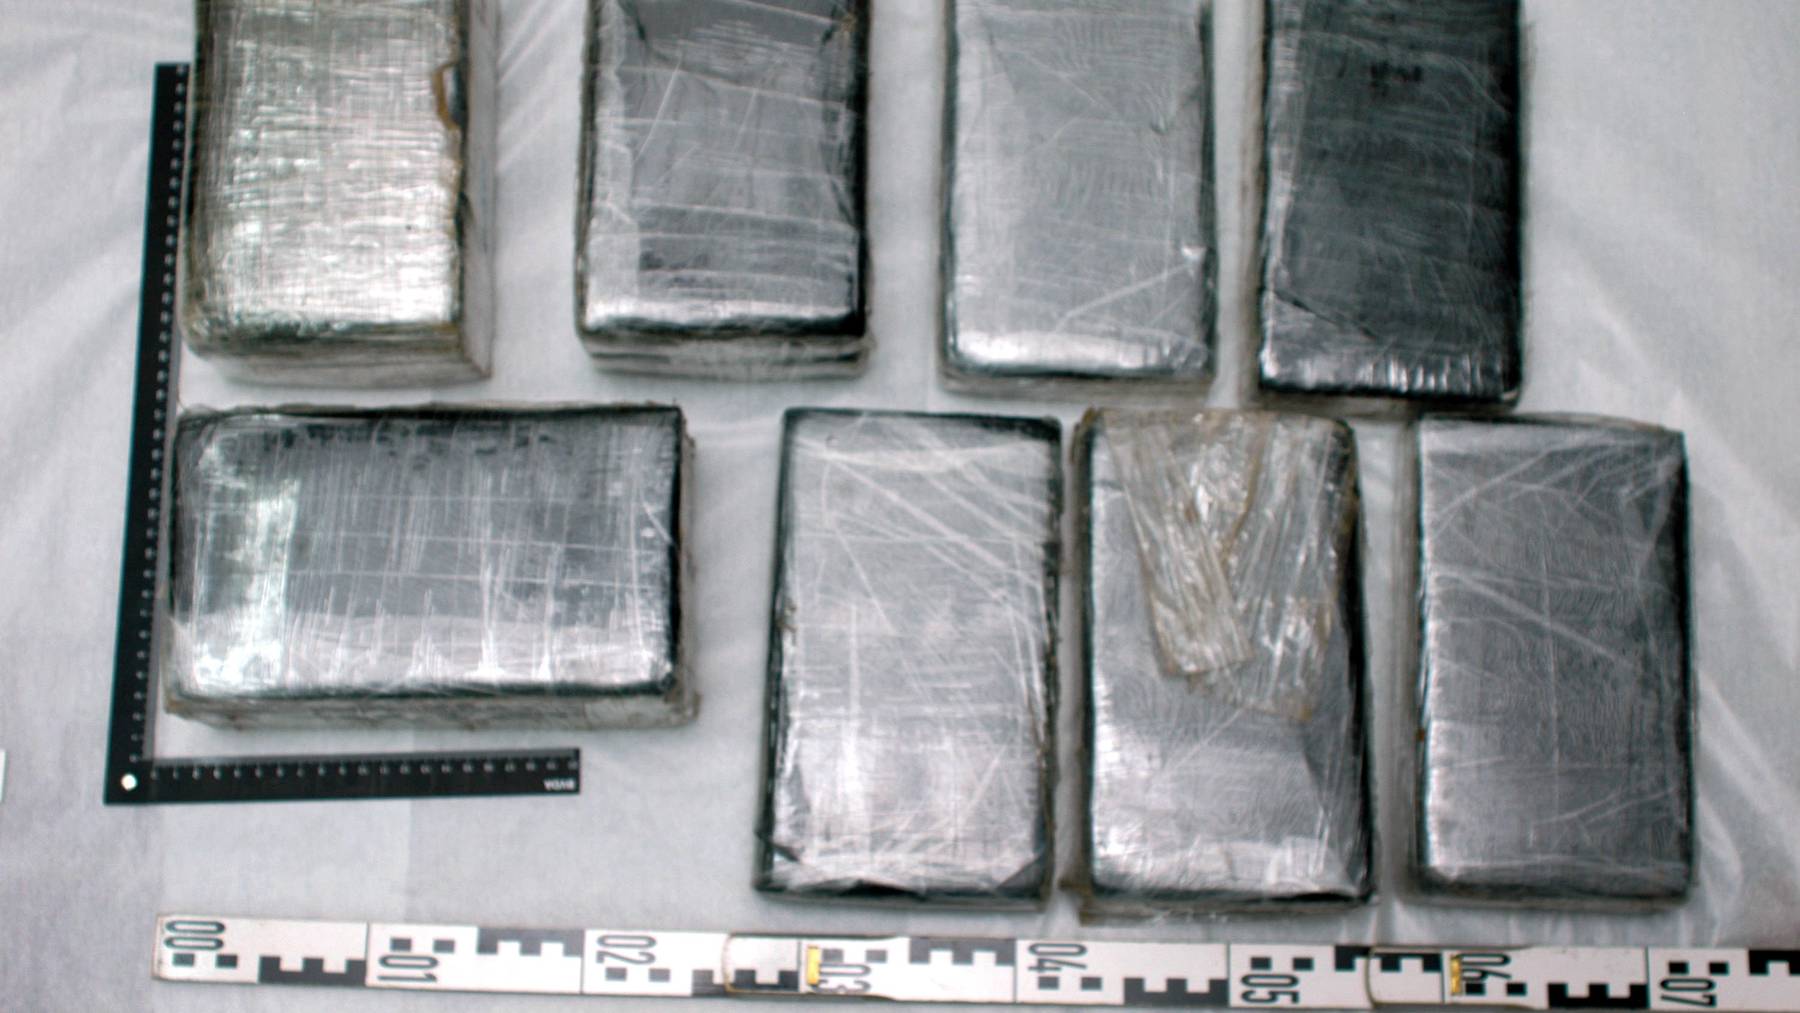 Die Schaffhauser Polizei beschlagnahmte 30 Kilogramm Kokain. (Symbolbild)